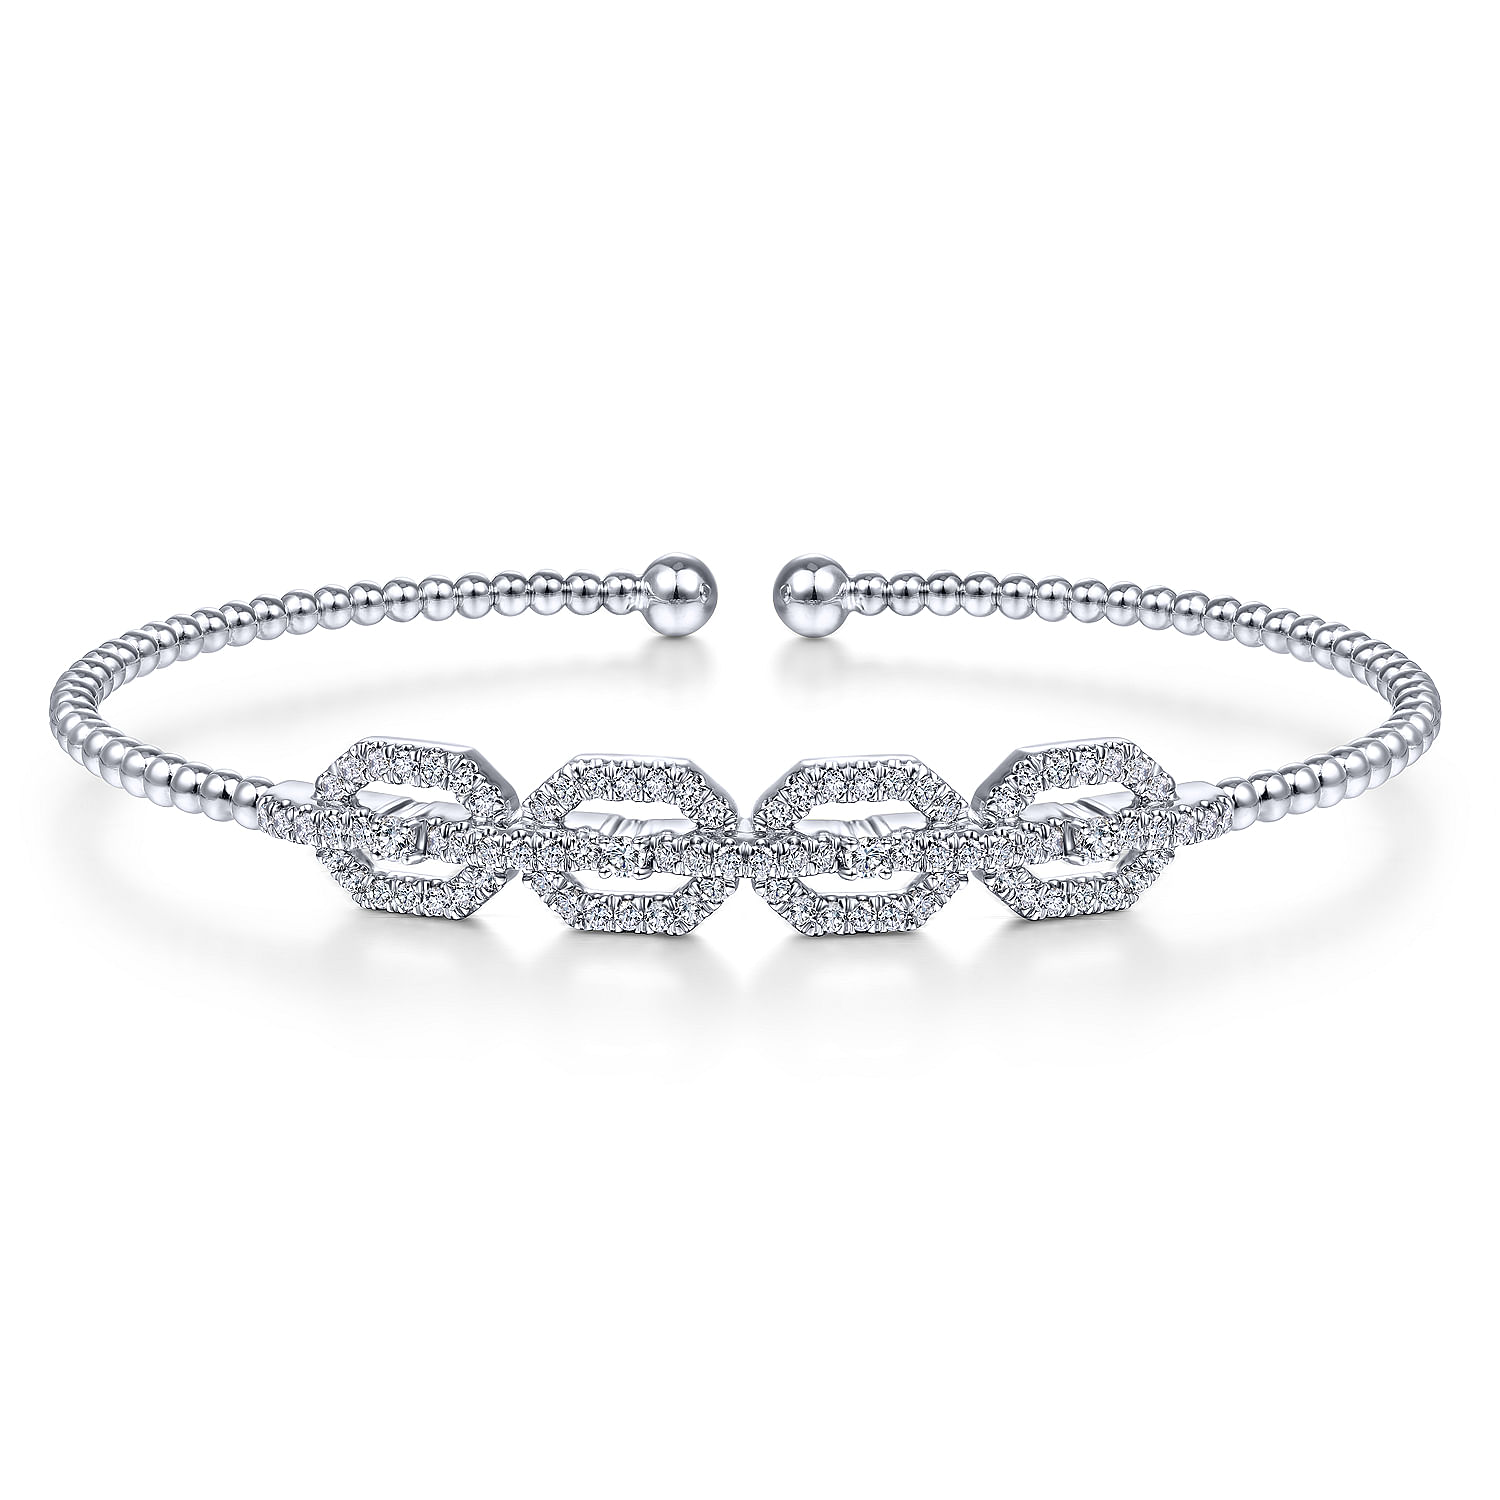 14K White Gold Bujukan Bead Cuff Bracelet with Diamond Pavé Links